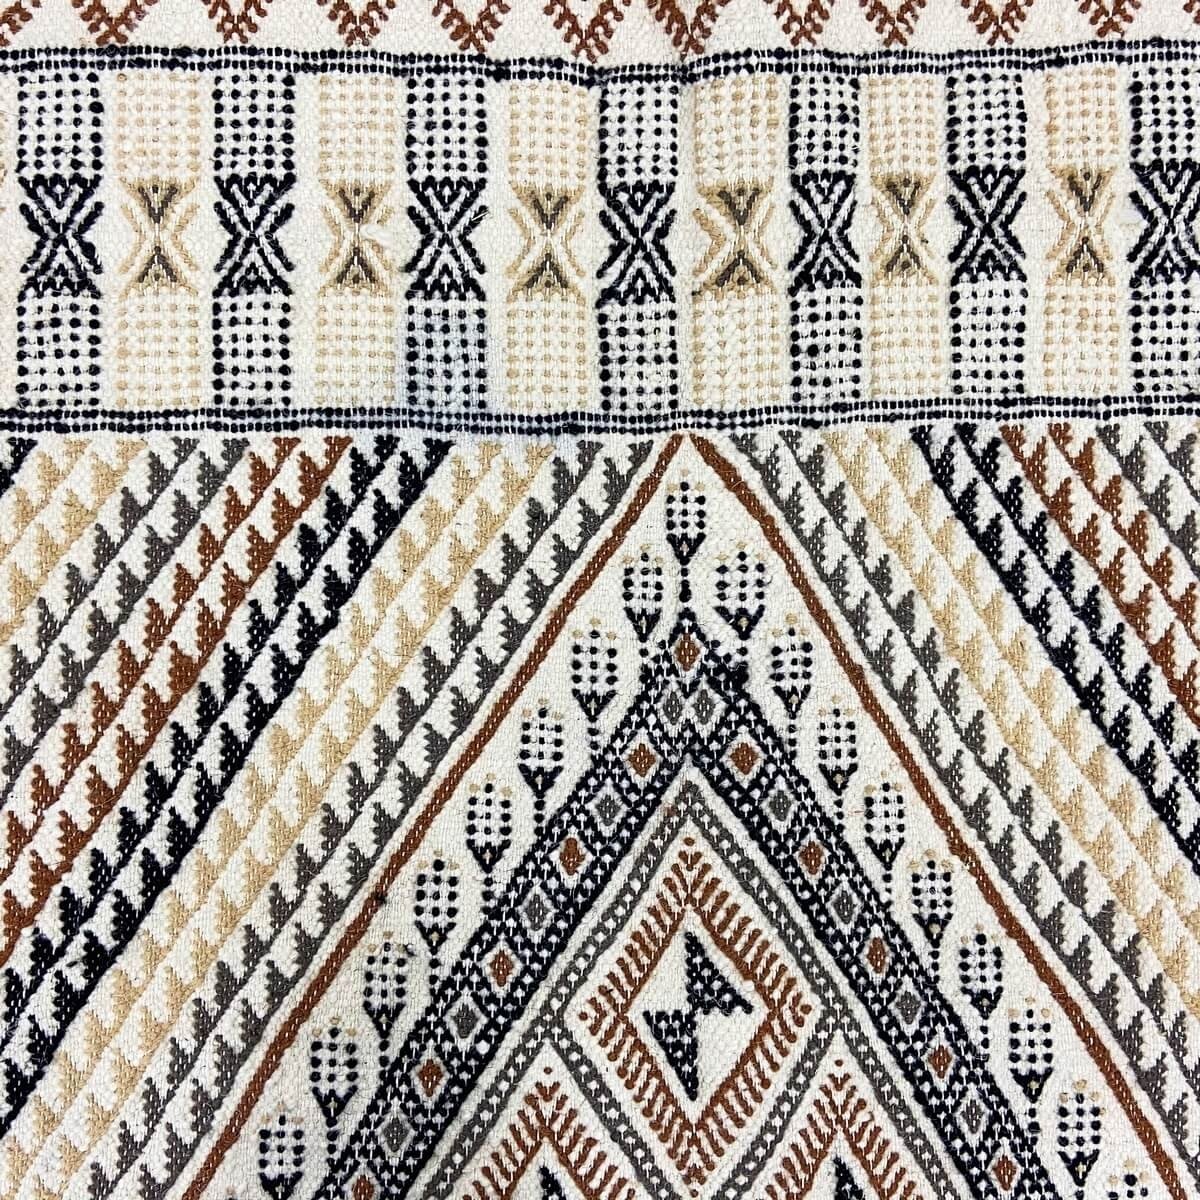 Berber tapijt Tapijt Margoum Homssi 124x204 Wit/Bruin (Handgeweven, Wol, Tunesië) Tunesisch Margoum Tapijt uit de stad Kairouan.